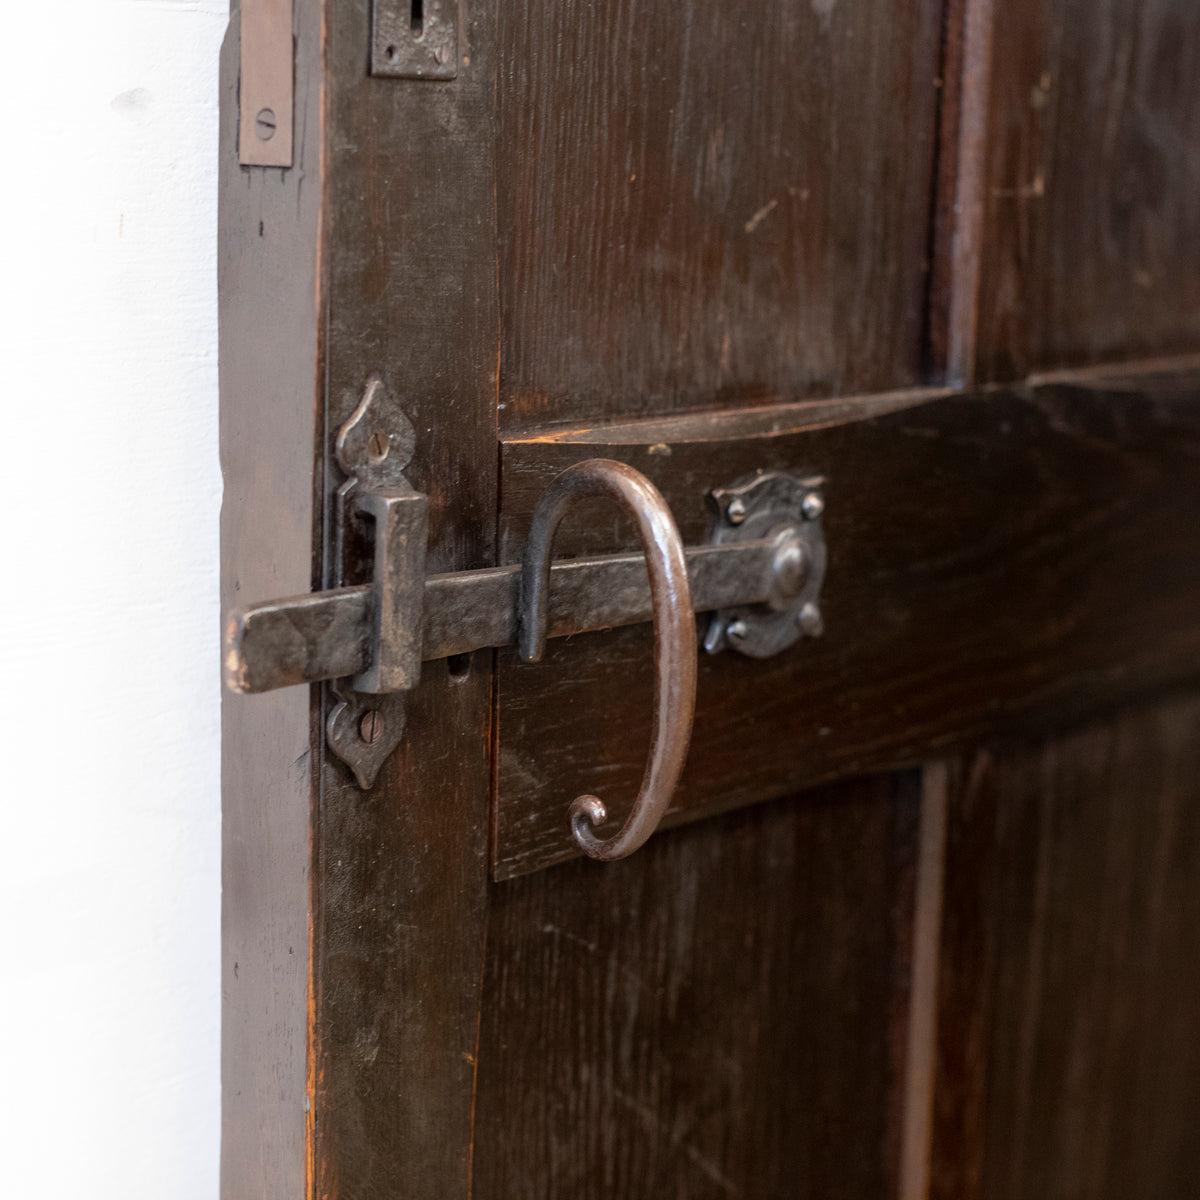 Antique Oak Arched Latch Front Door - 200cm x 98cm | The Architectural Forum